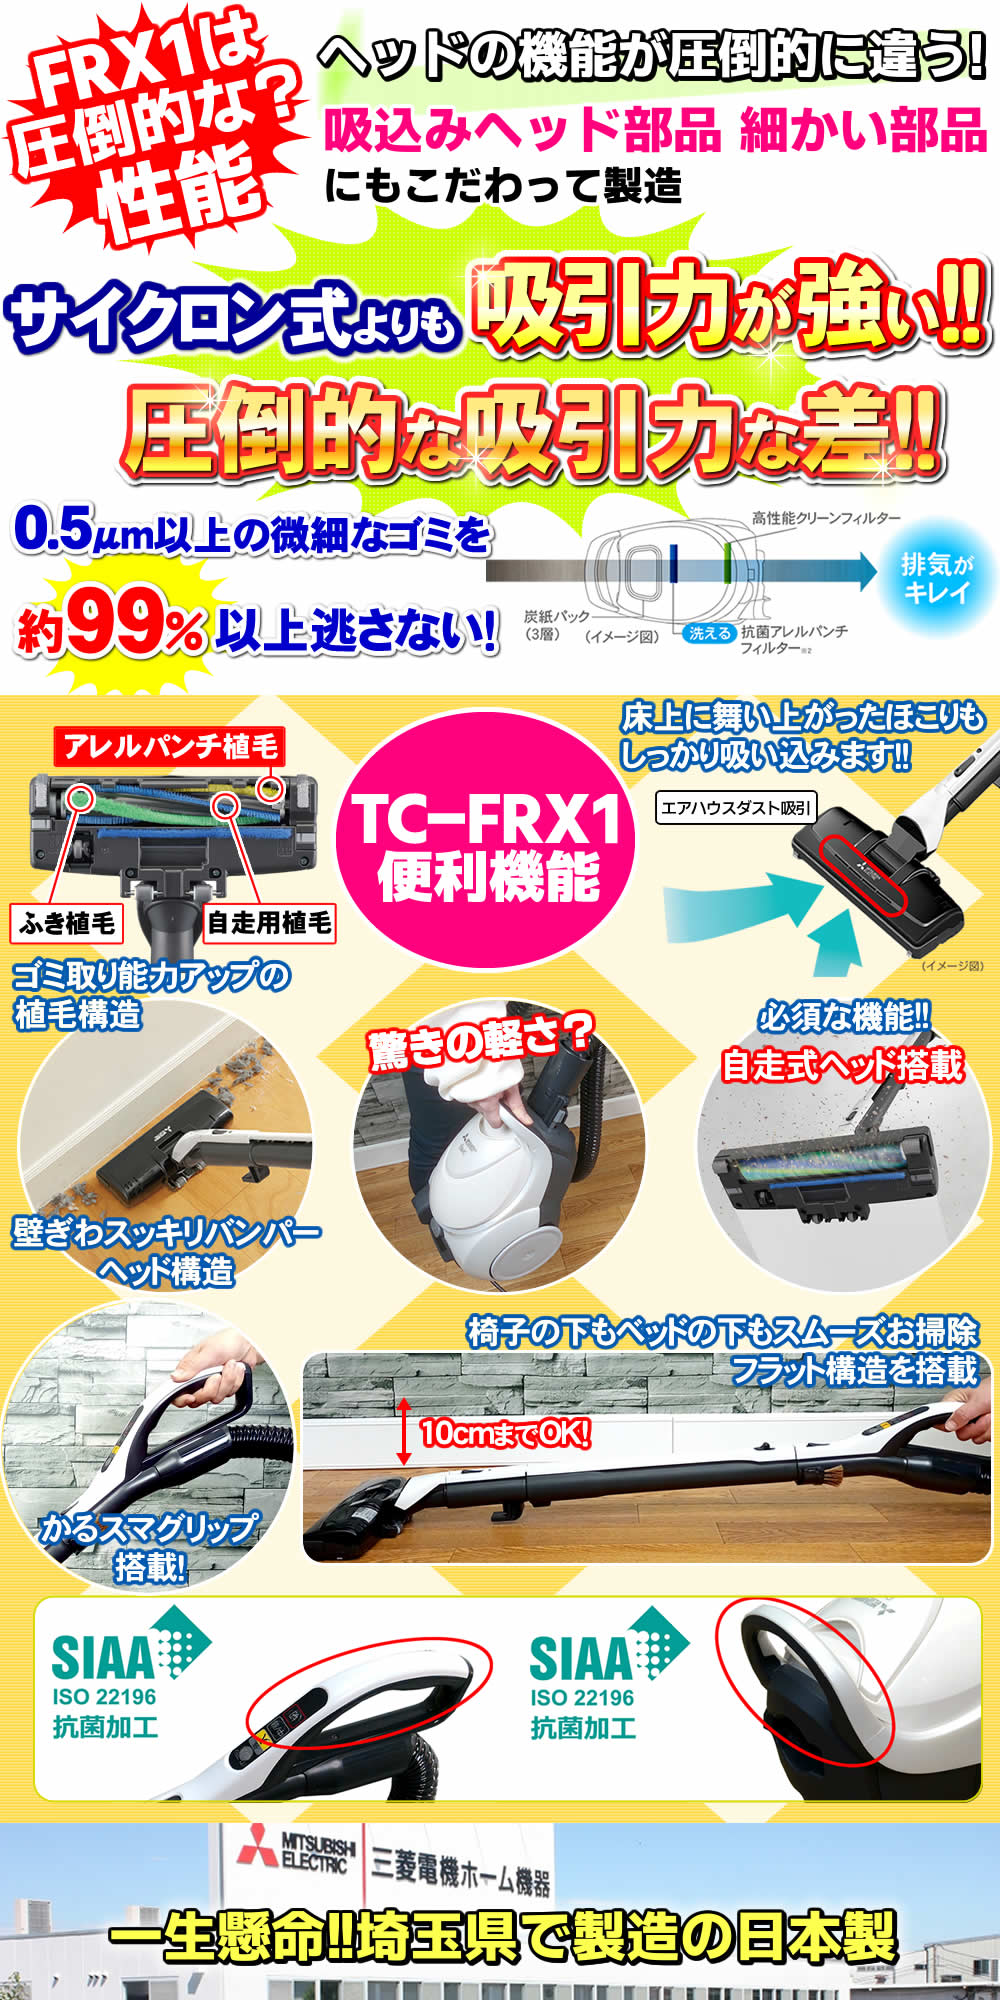 三菱 掃除機 紙パック式 吸引力 最強クラス   TC-FRX1の便利機能